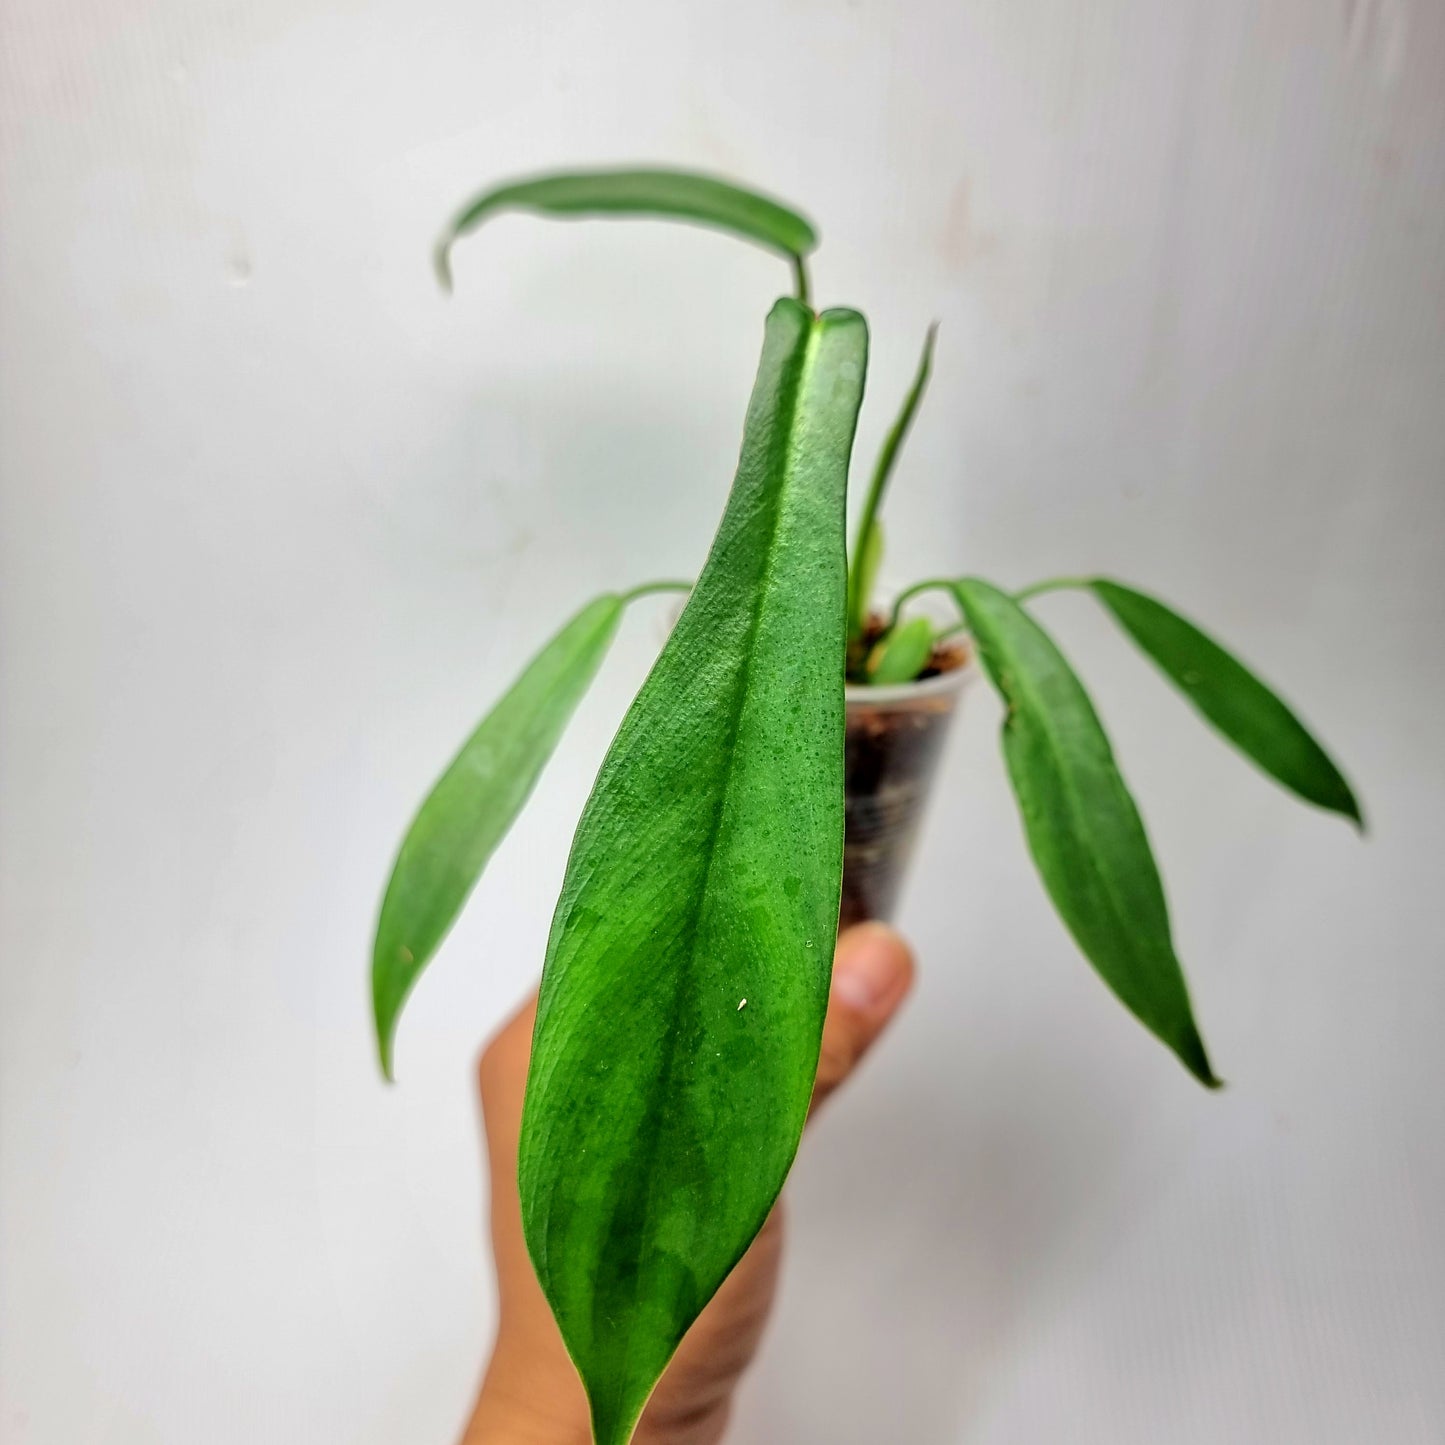 rare Philodendron joepii (TC) for sale in Perth Australia